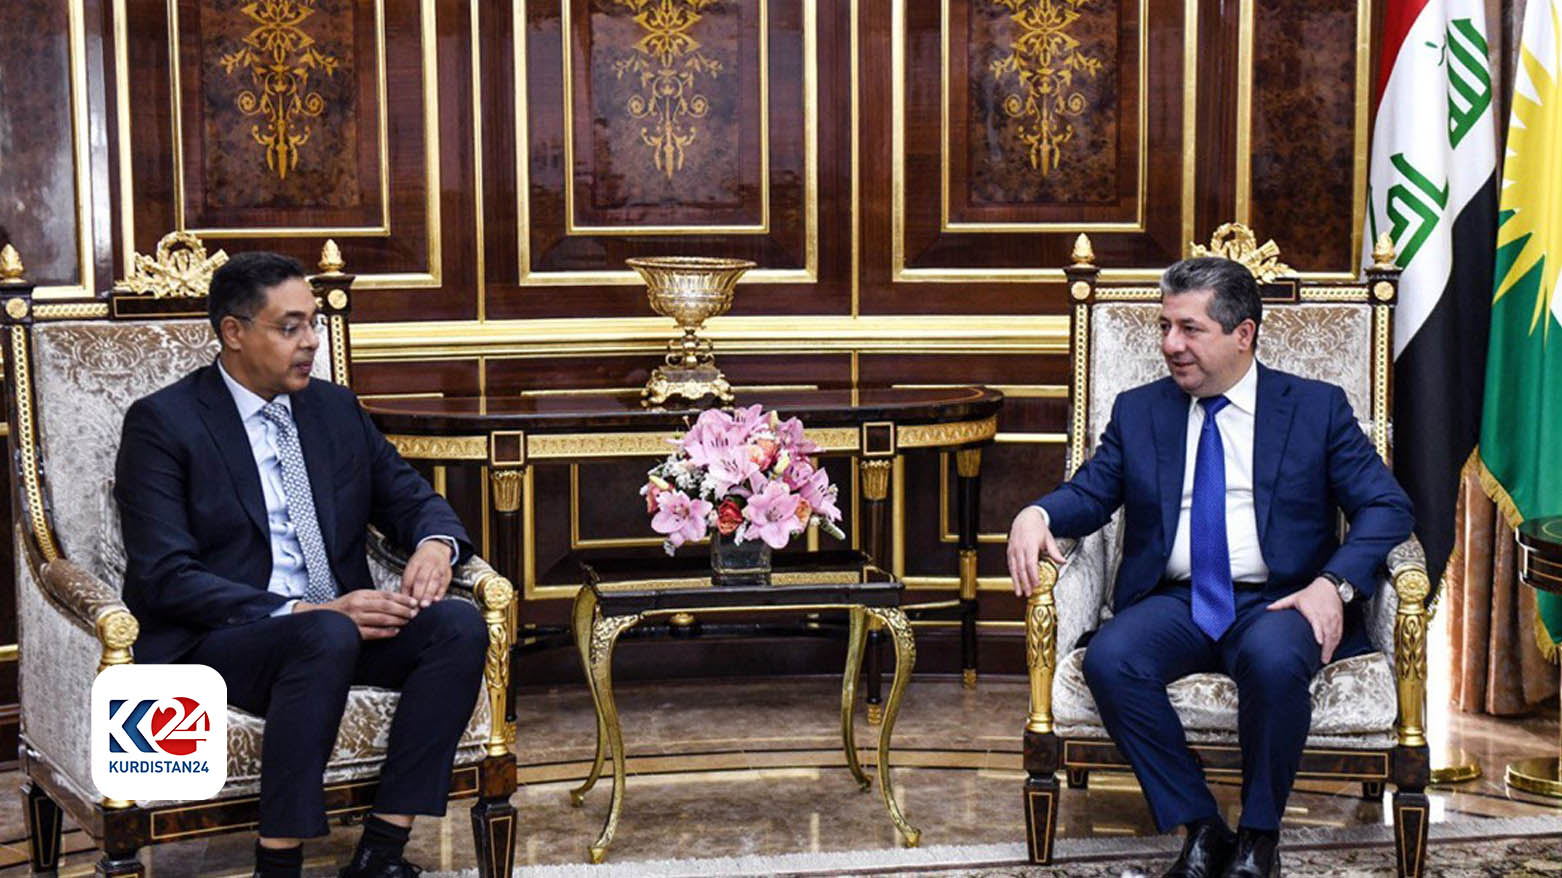 Kuveyt'in Irak Büyükelçisi Tarık Abdullah el-Farac ve Kürdistan Bölgesi Başbakanı Mesrur Barzani